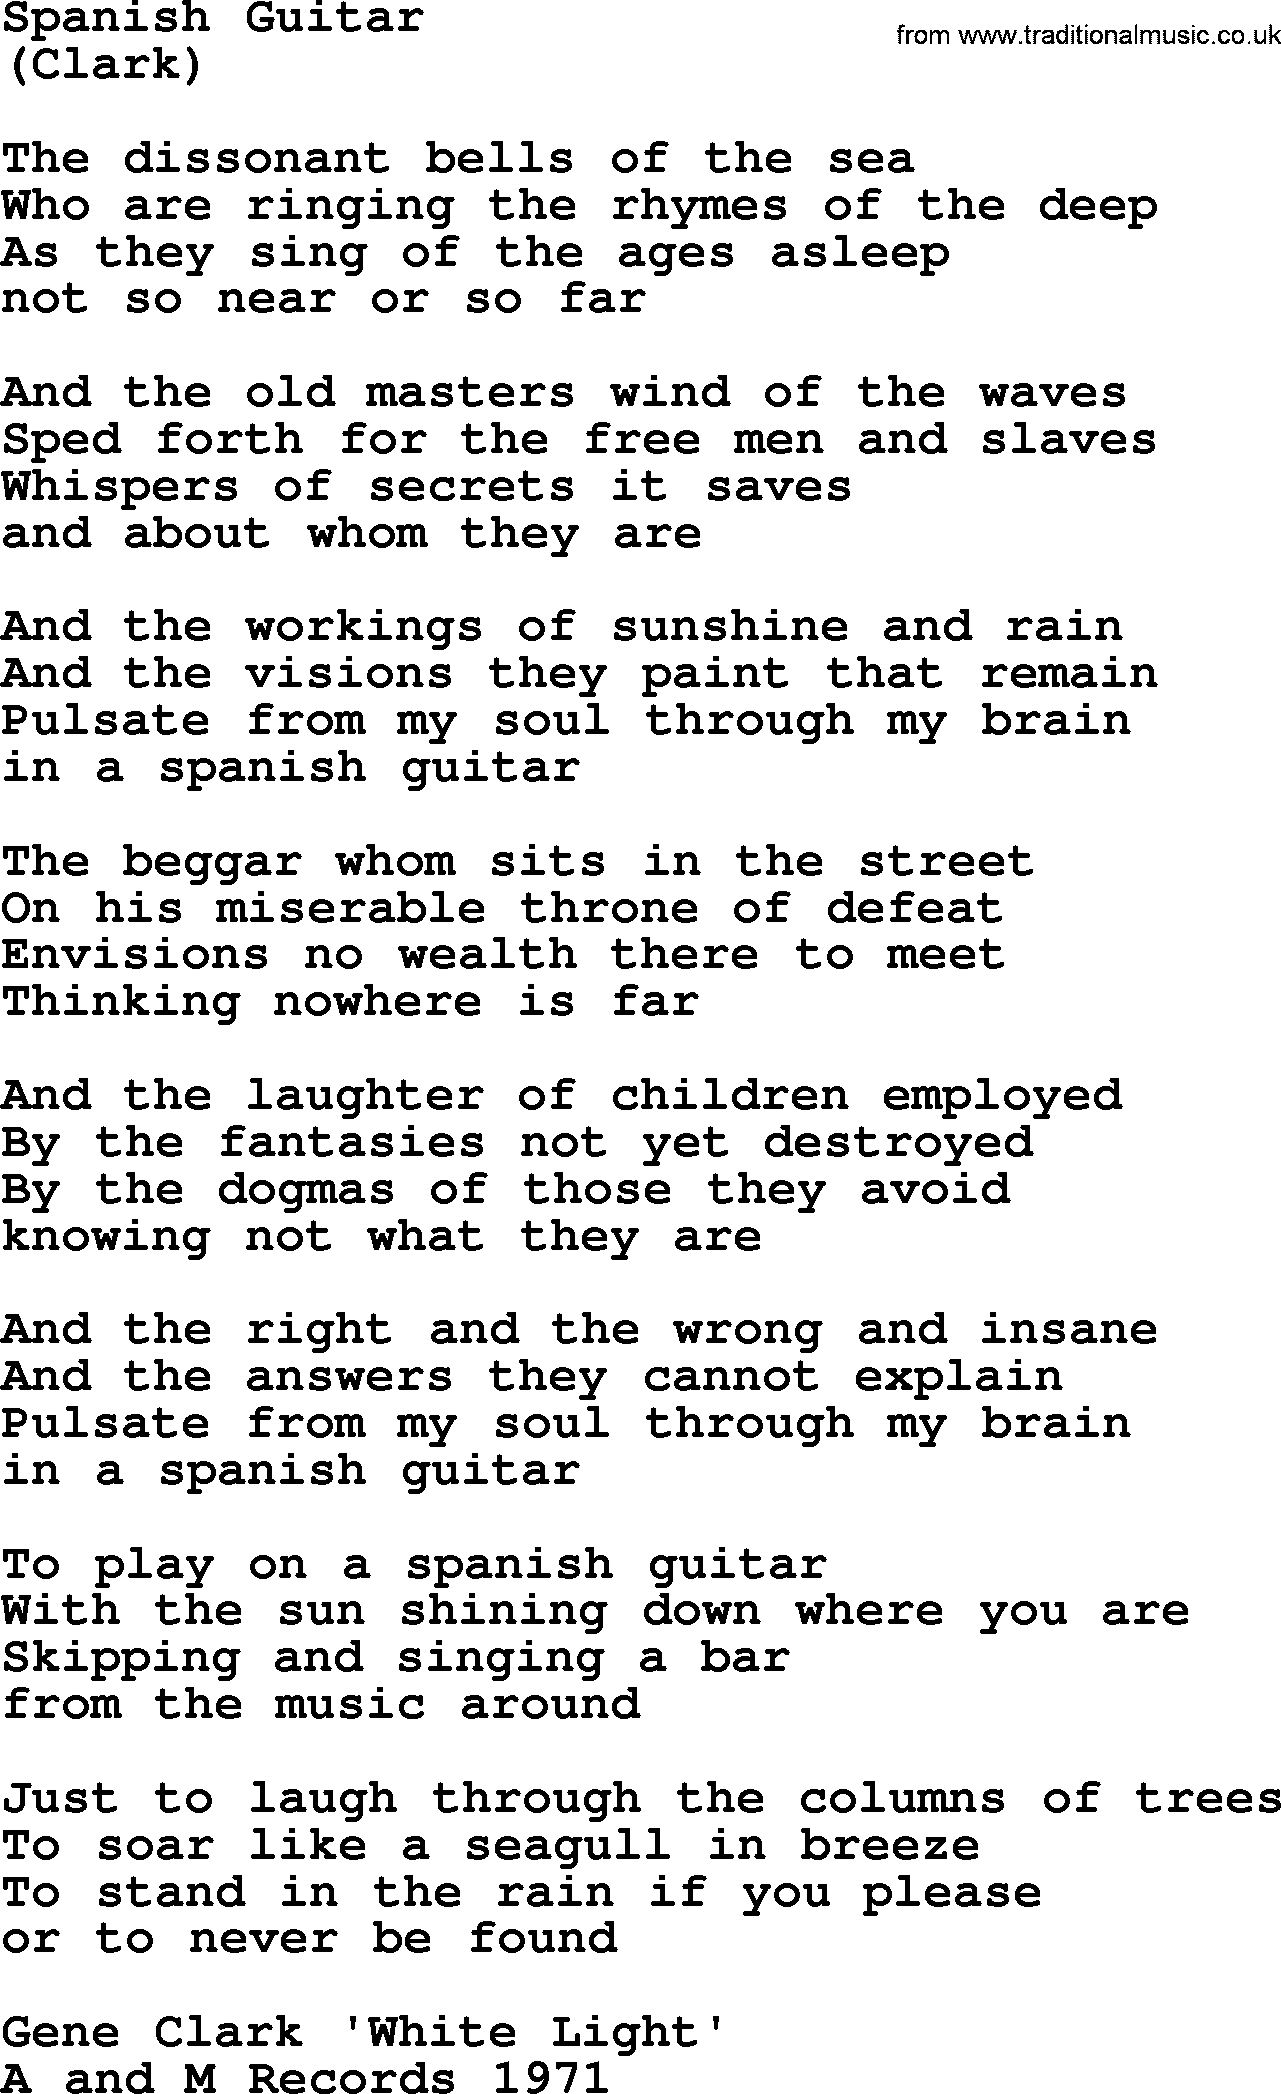 The Byrds song Spanish Guitar, lyrics